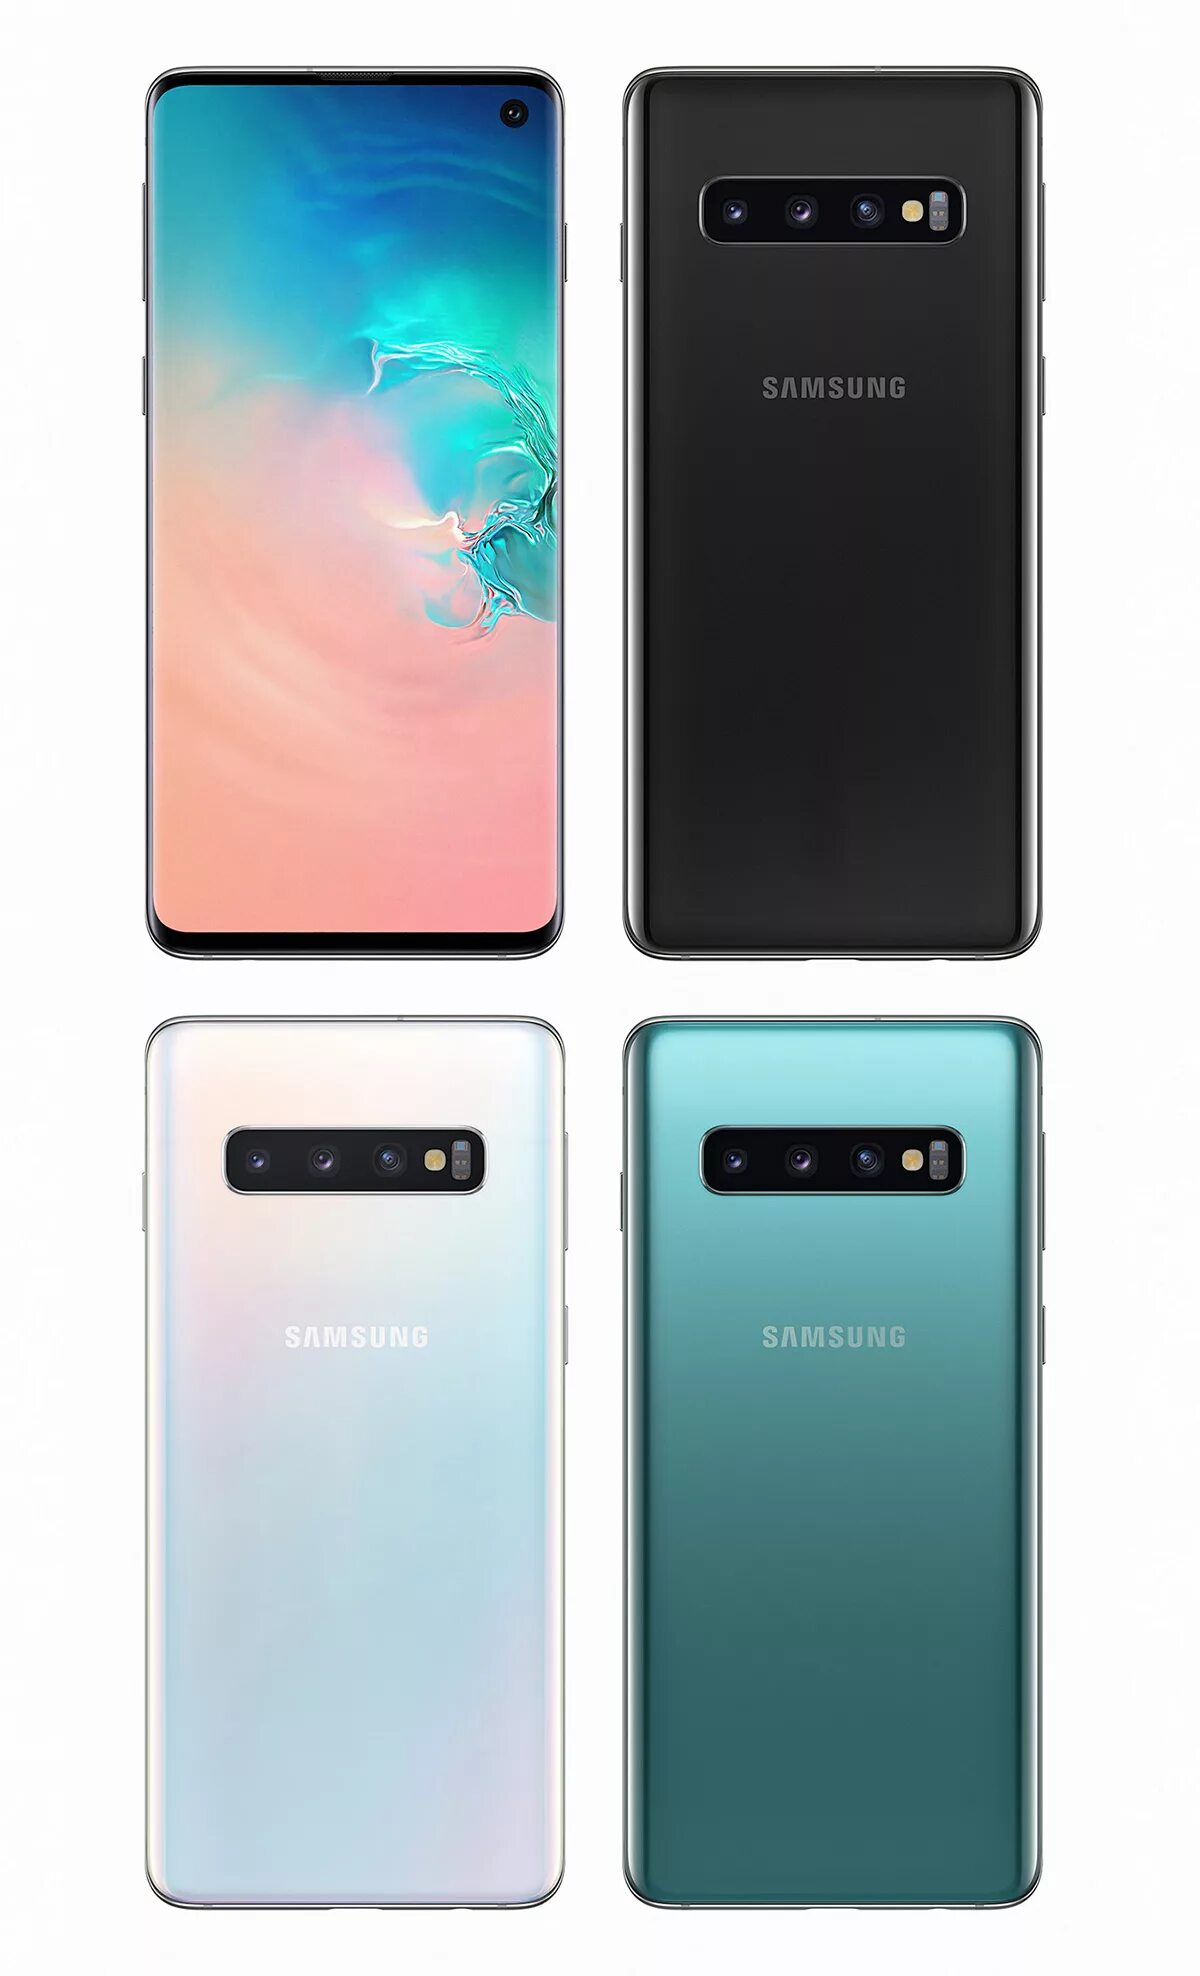 Samsung Galaxy s10. Samsung Galaxy s10 Samsung. Samsung s10 Plus. Samsung Galaxy s10 / s10 +. Последняя версия samsung galaxy